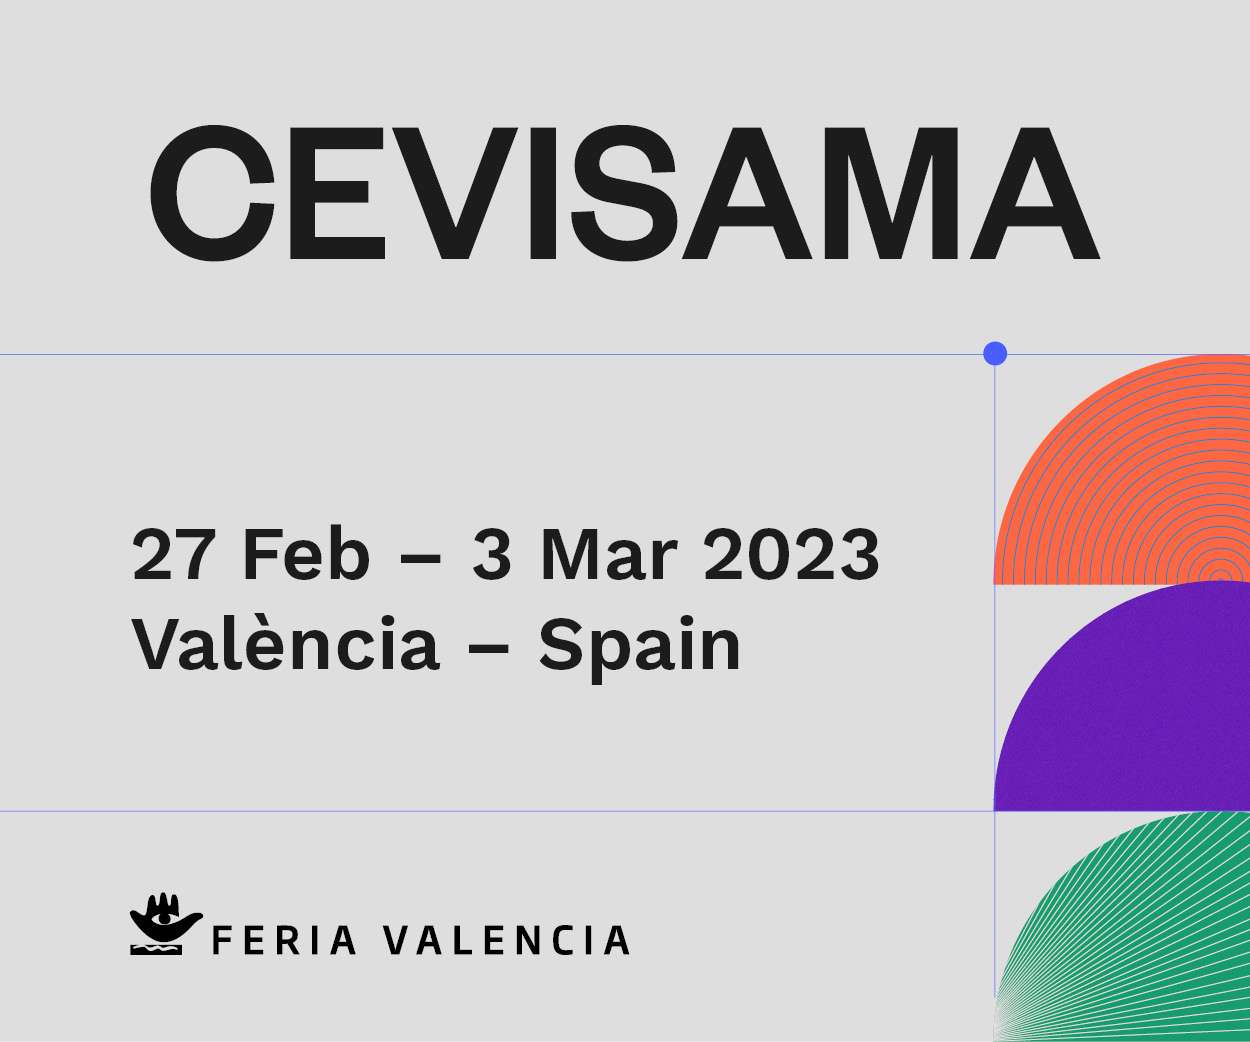 https://www.spainhabitat.es/spainhabitat/wp-content/uploads/2022/10/Cevisama-Spain-contract-300x250px.jpg